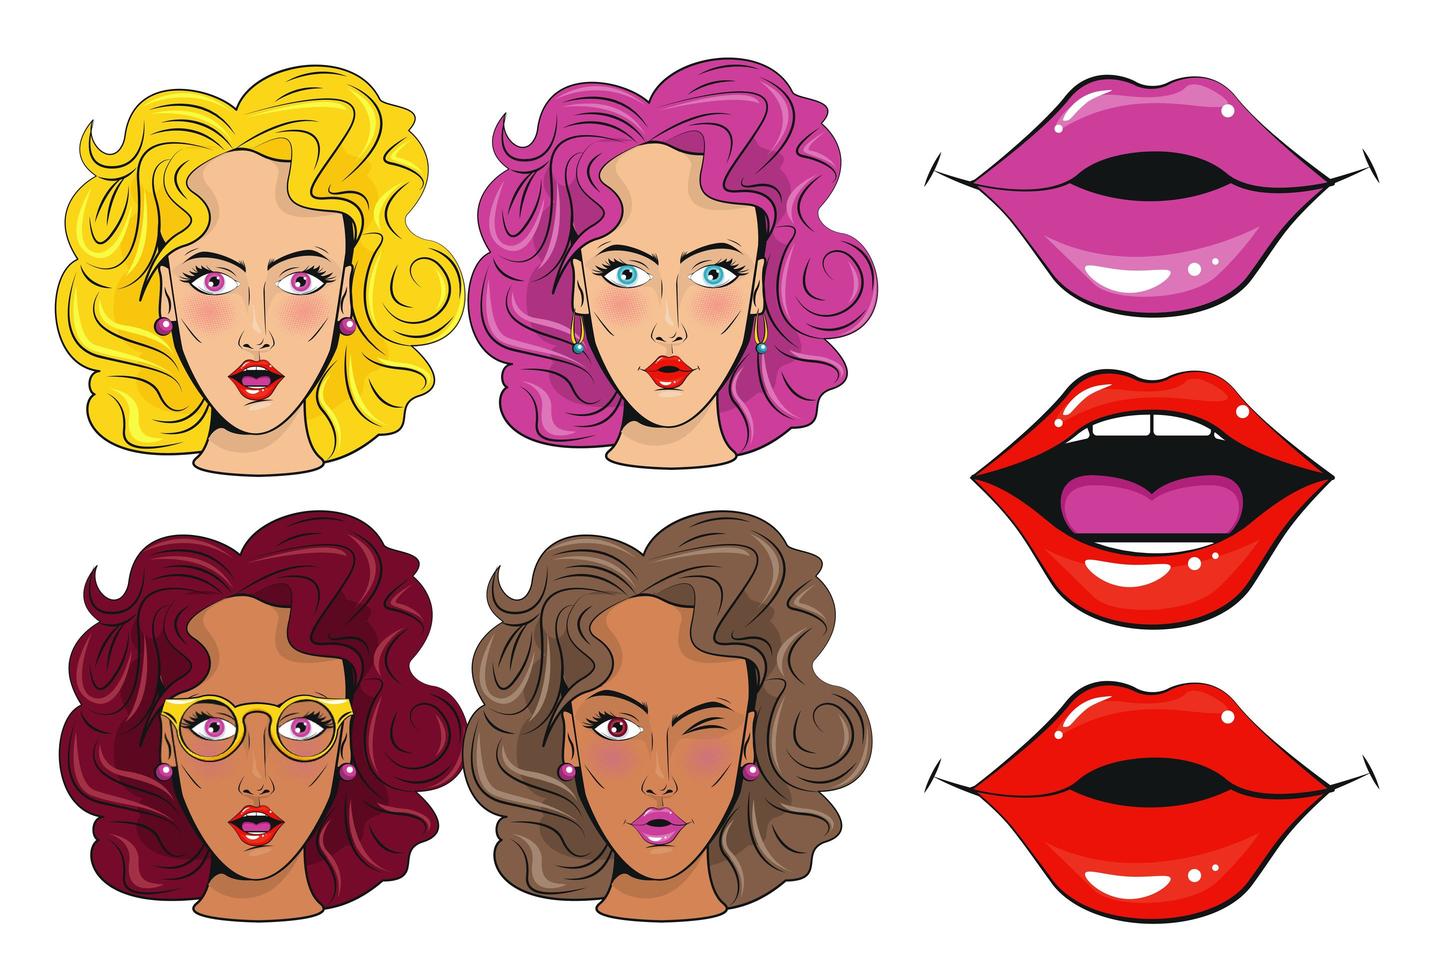 gruppo di personaggi di belle ragazze e bocche sexy poster in stile pop art vettore